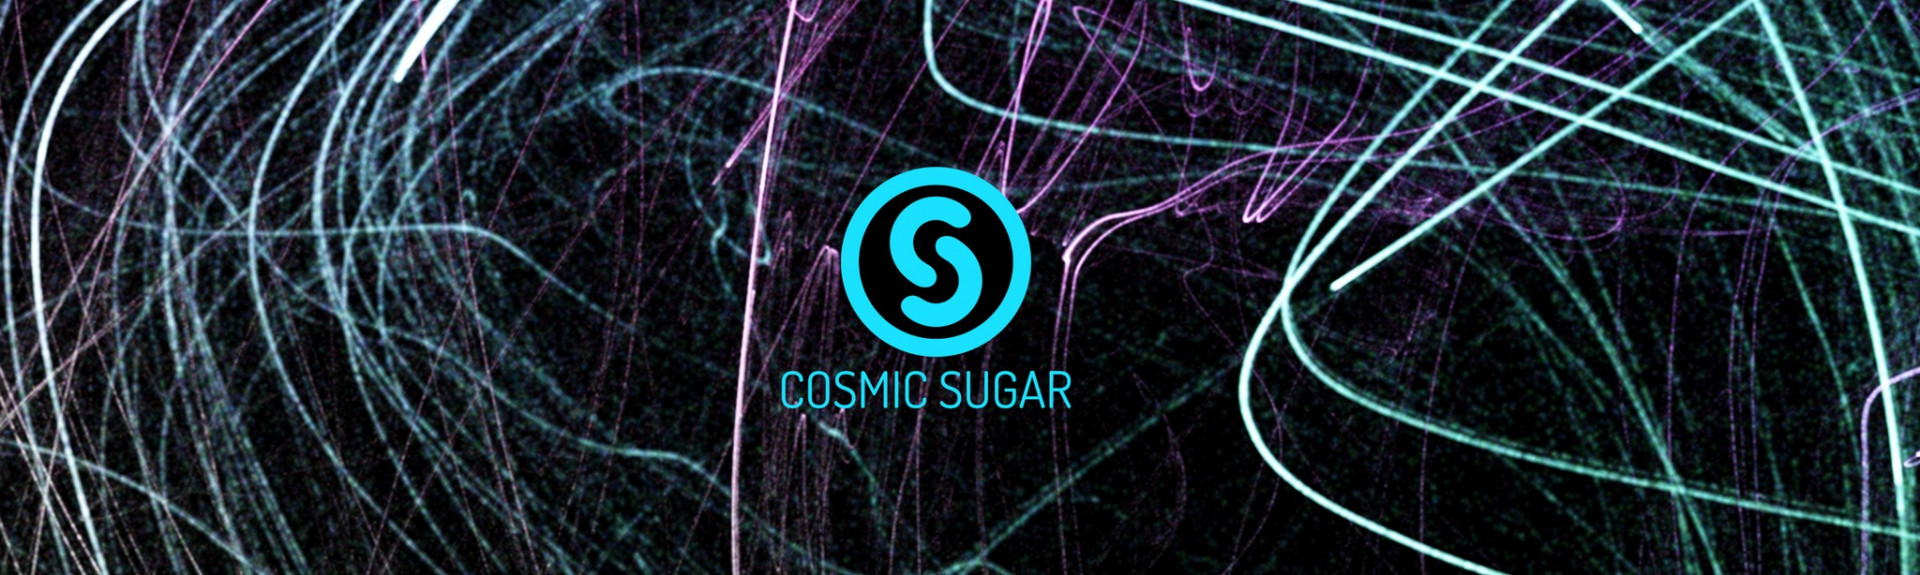 Cosmic Sugar